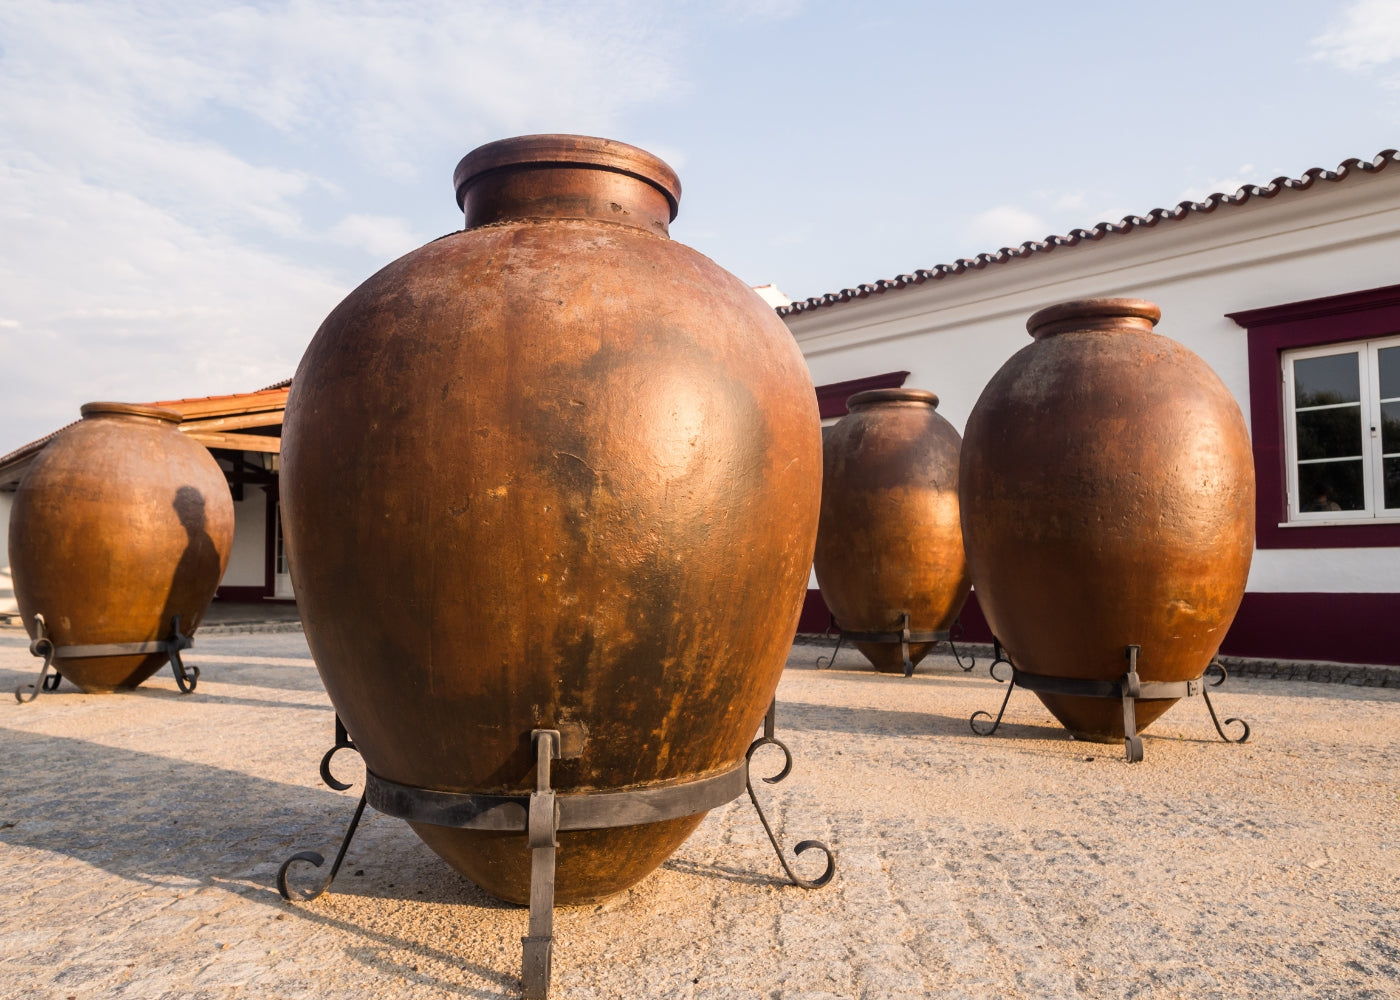 Bild von traditionellen Ton-Gefäßen für Wein vor einem malerischen Weingut in Portugal.